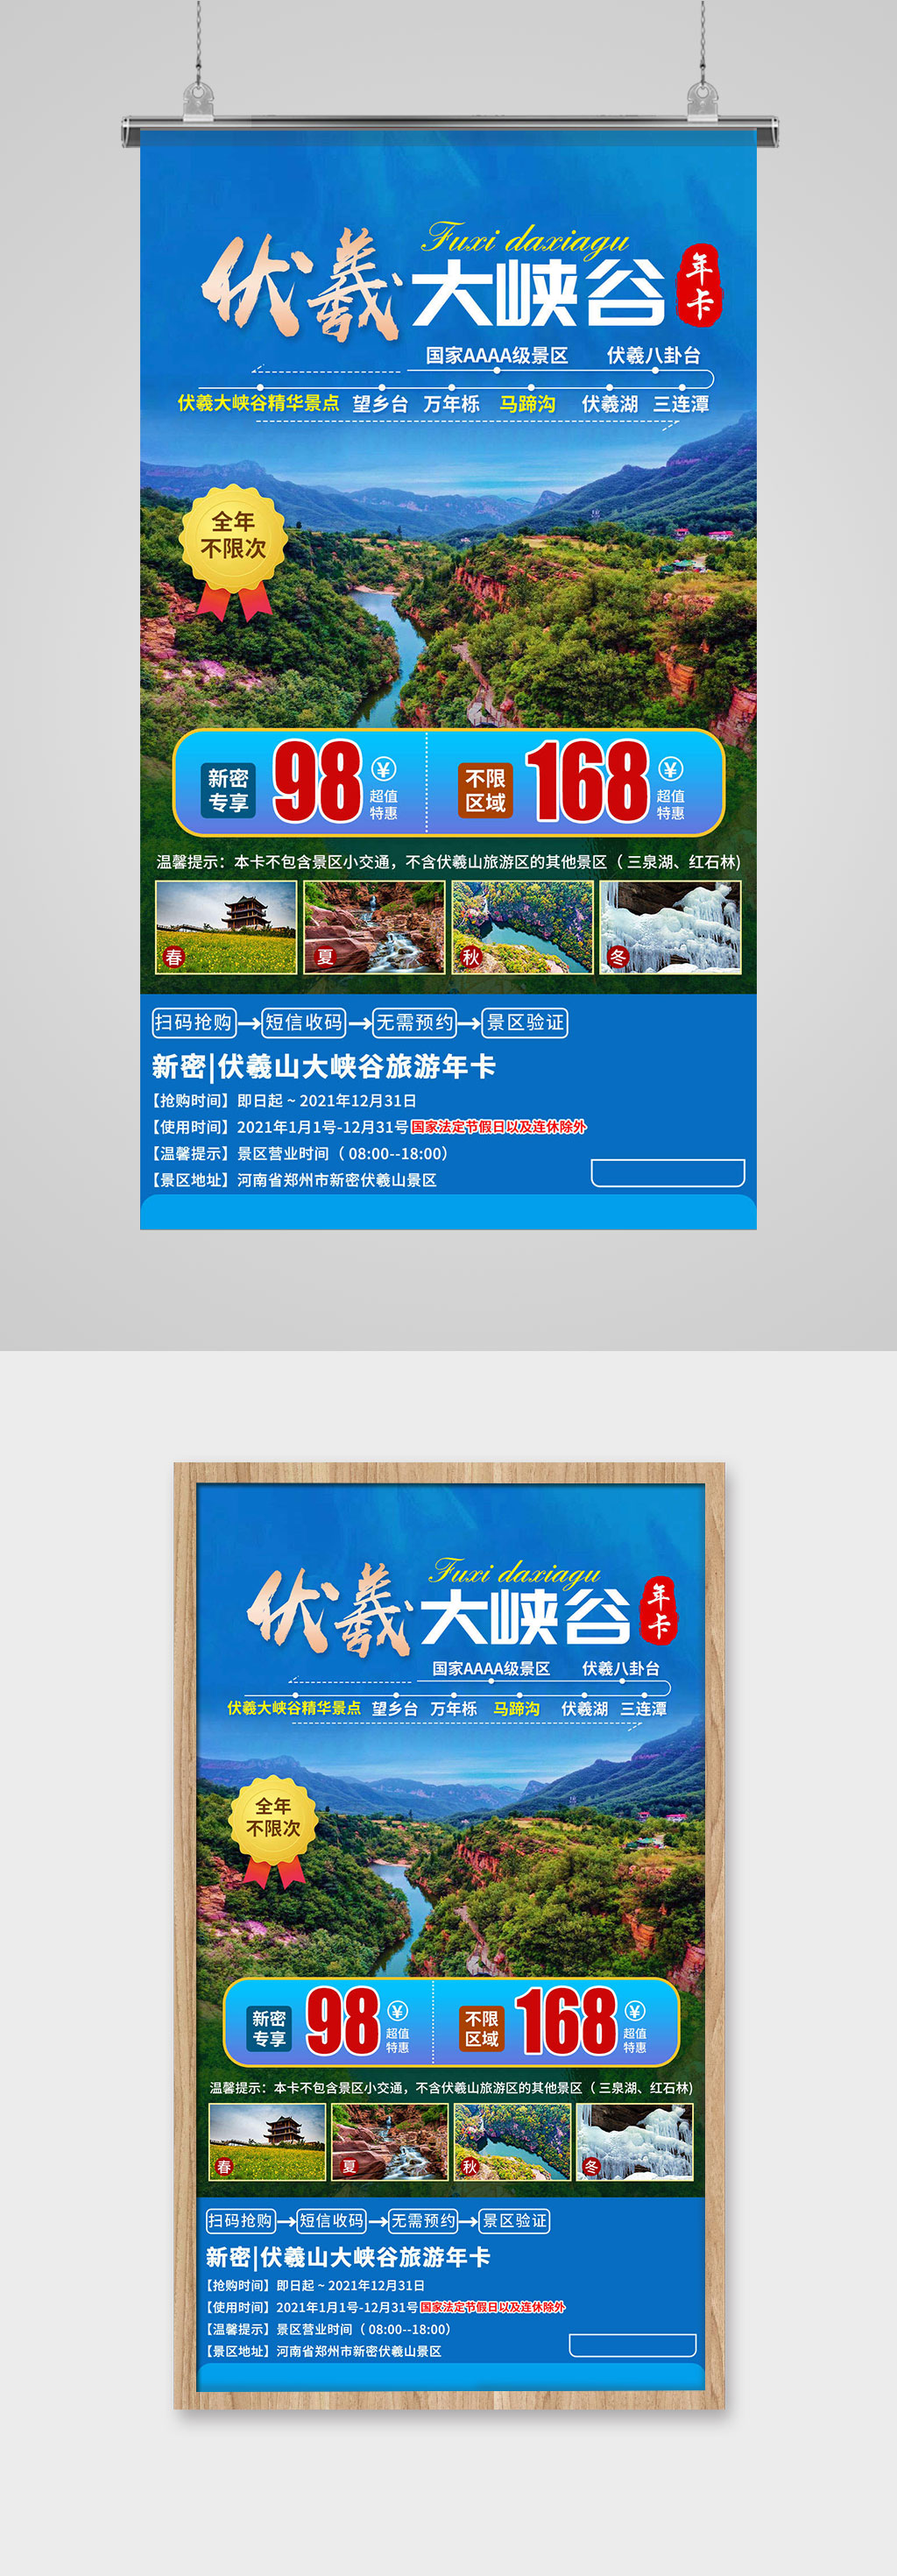 伏羲大峡谷年卡旅游宣传海报